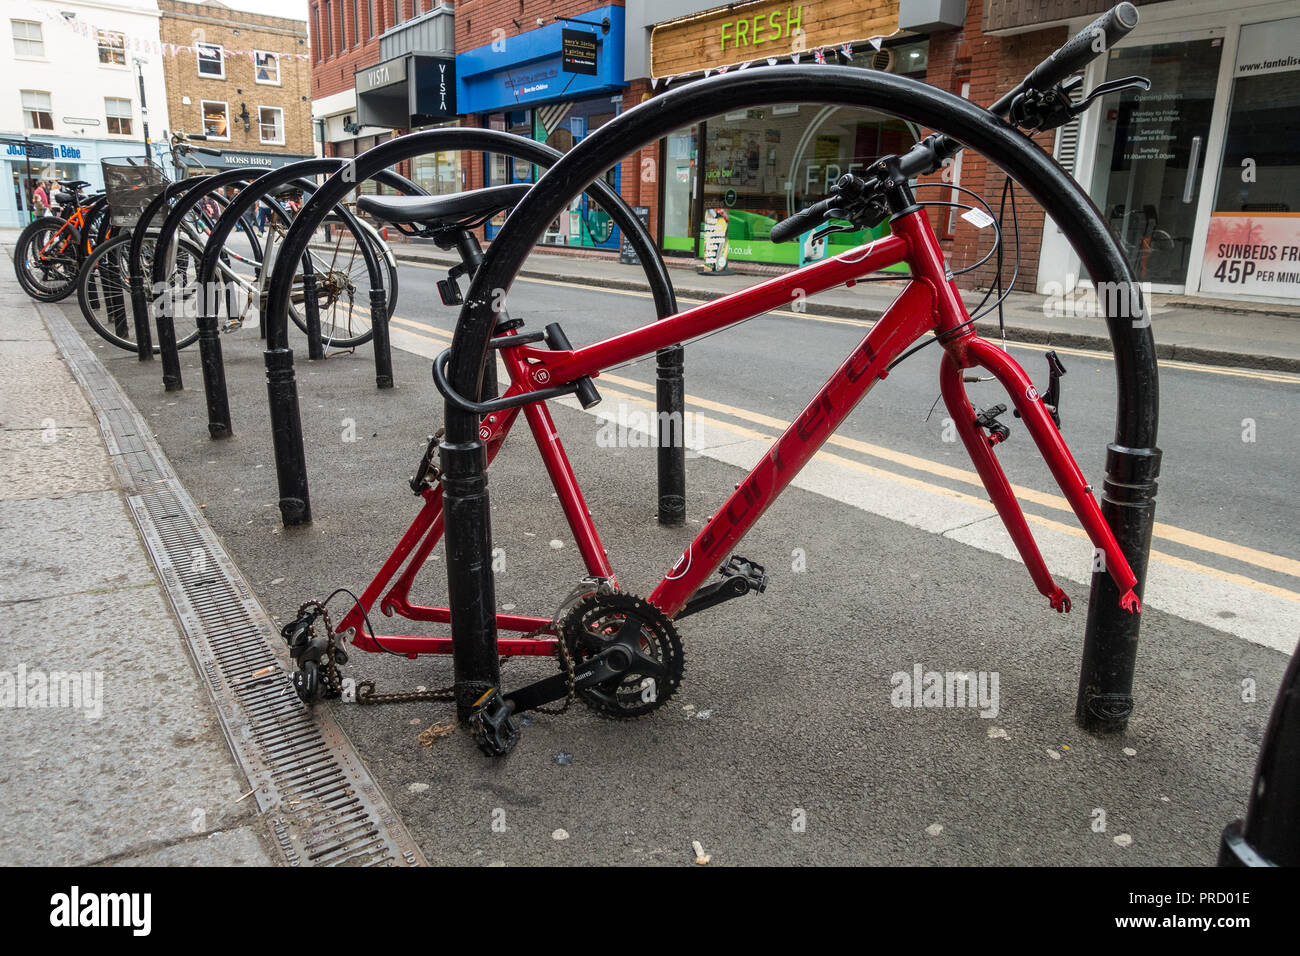 Ein Rad, das bis zu einem Fahrradträger in Windsor gesperrt ist hat Räder in einem Akt der Kleinkriminalität gestohlen. Der Rahmen ist links verlassen. Stockfoto